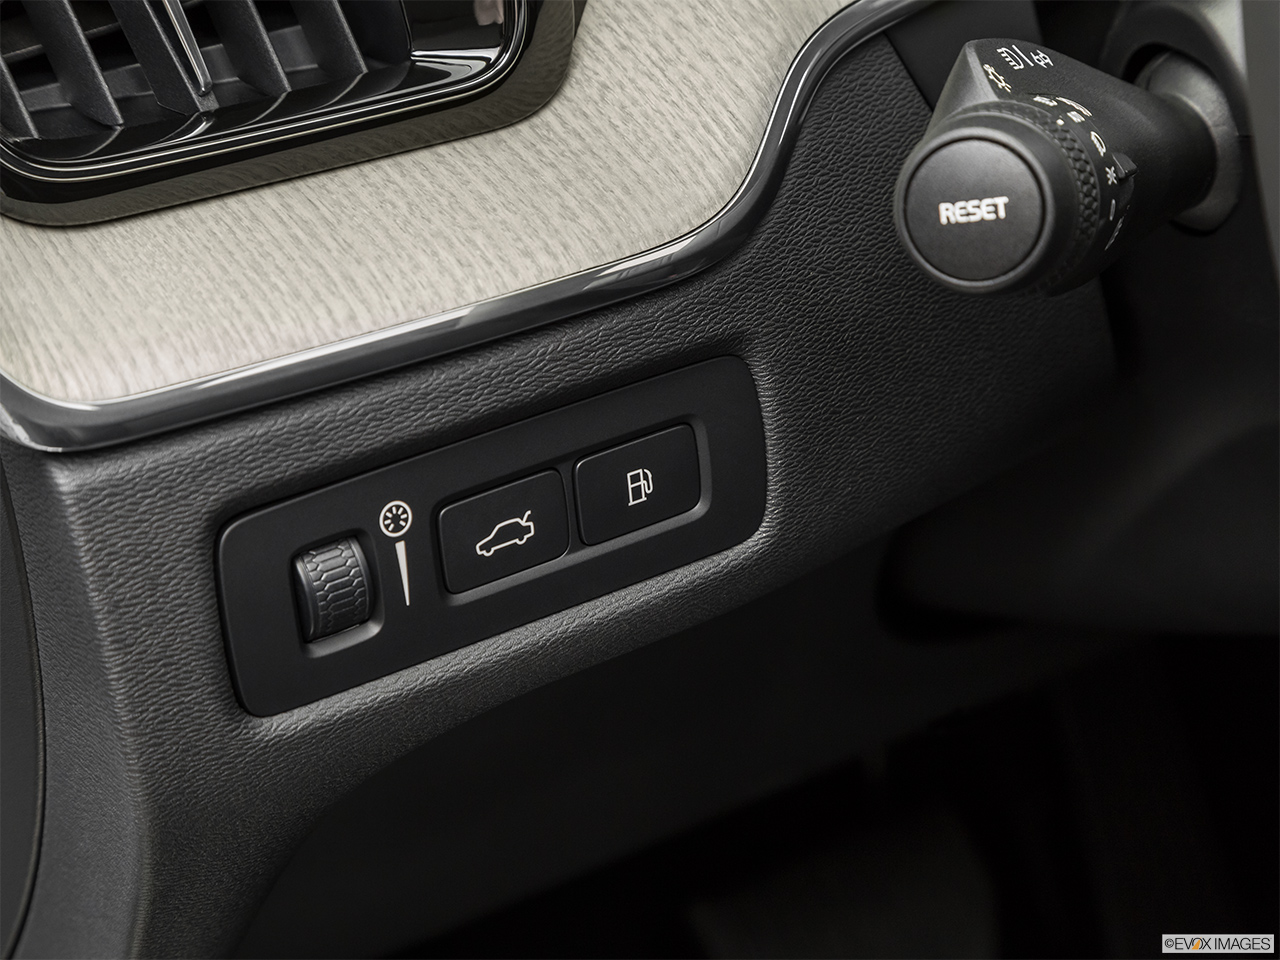 2019 Volvo XC60 T8 Inscription eAWD Plug-in Hybrid Gas cap release. 